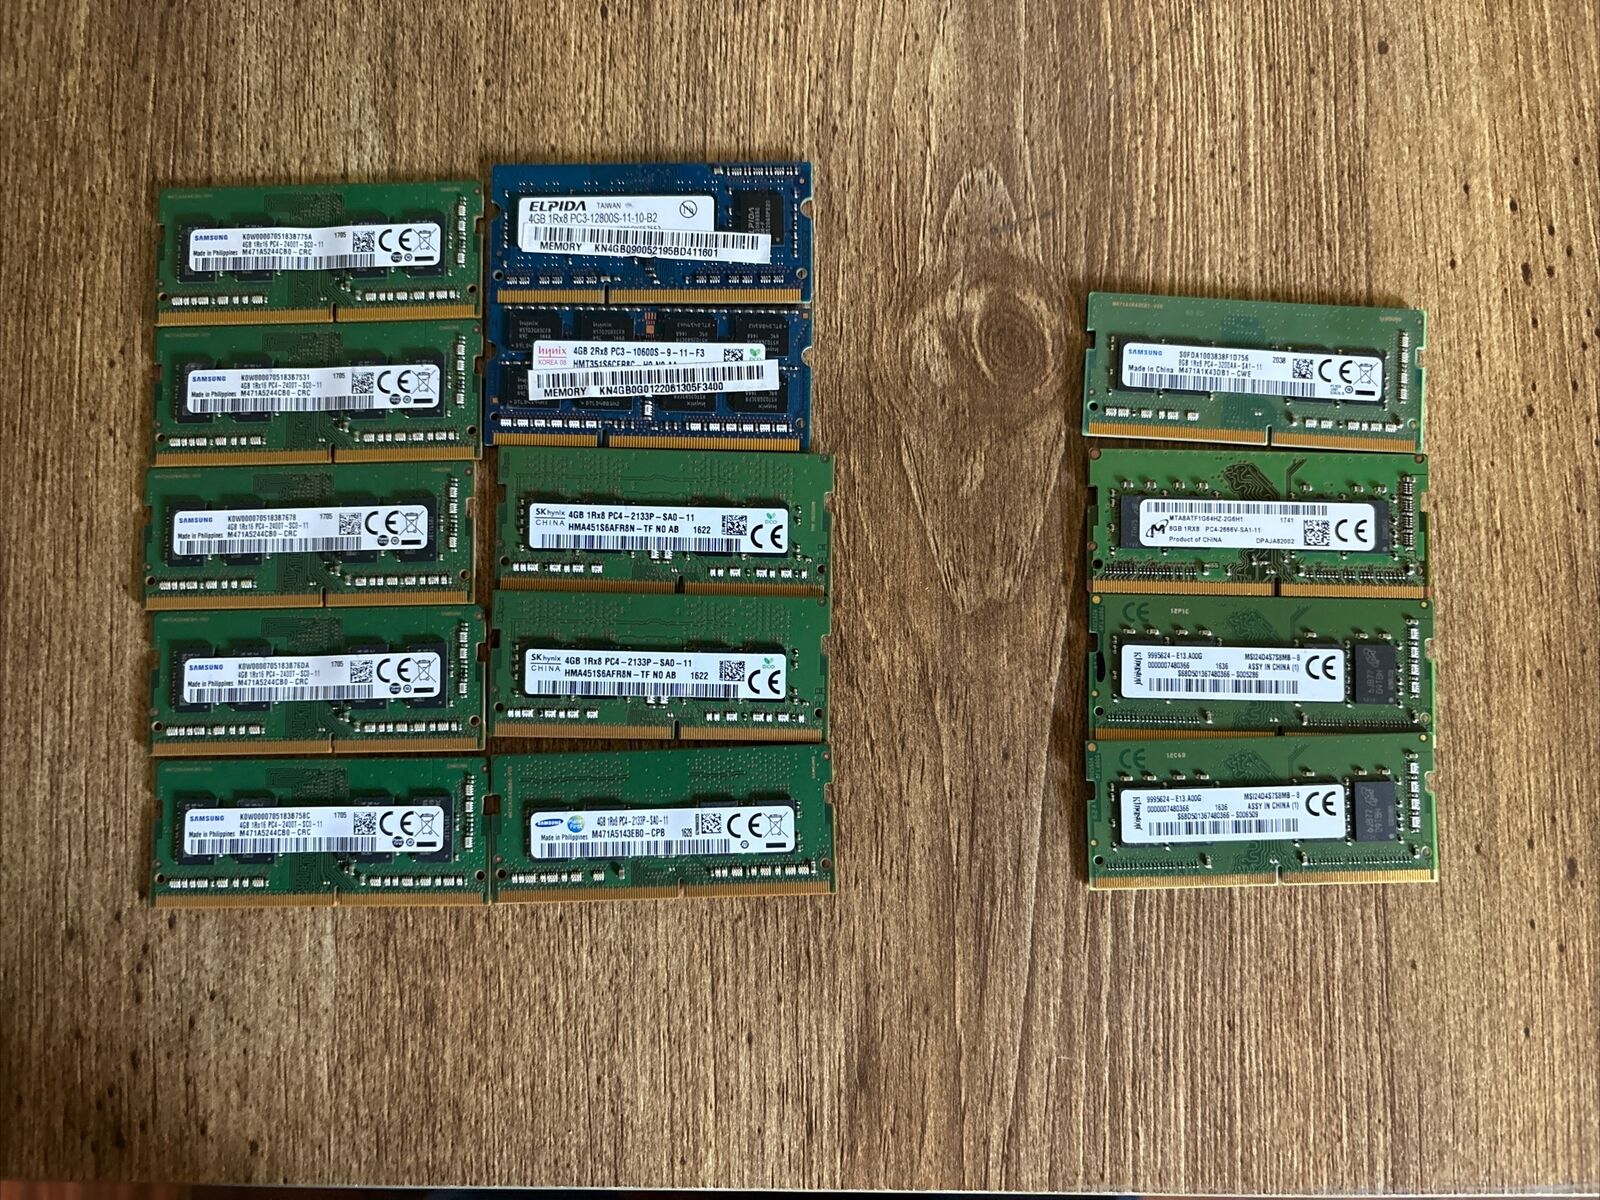 Lot of 14x DDR4 RAM Sticks - 10x 4GB / 4x 8GB Laptop Memory - 72 GB Total